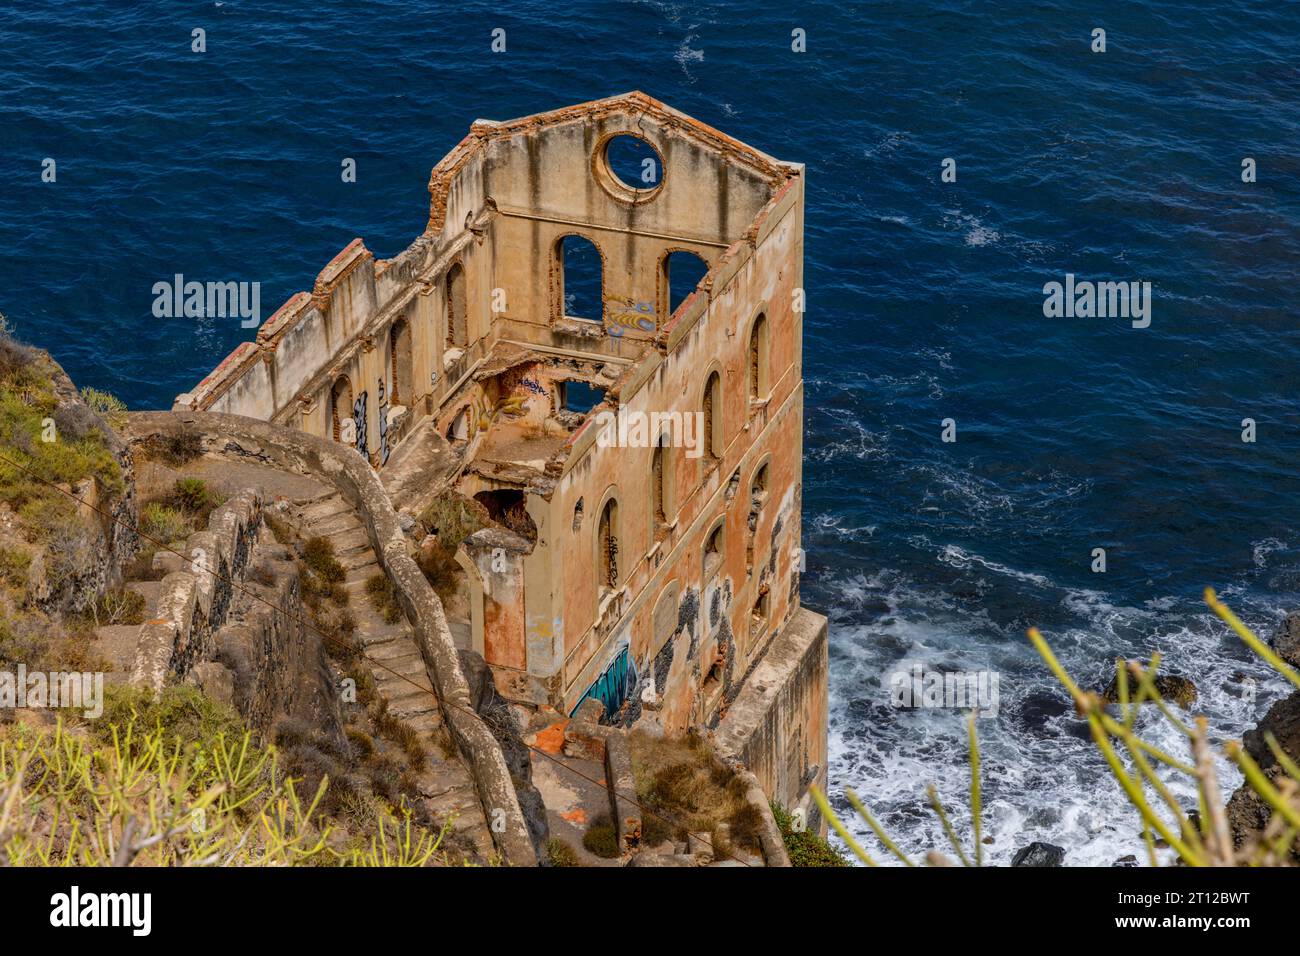 Elevador de Aguas de Gordejuela Spain industrial ruin near Los Realejos, Tenerife Stock Photo